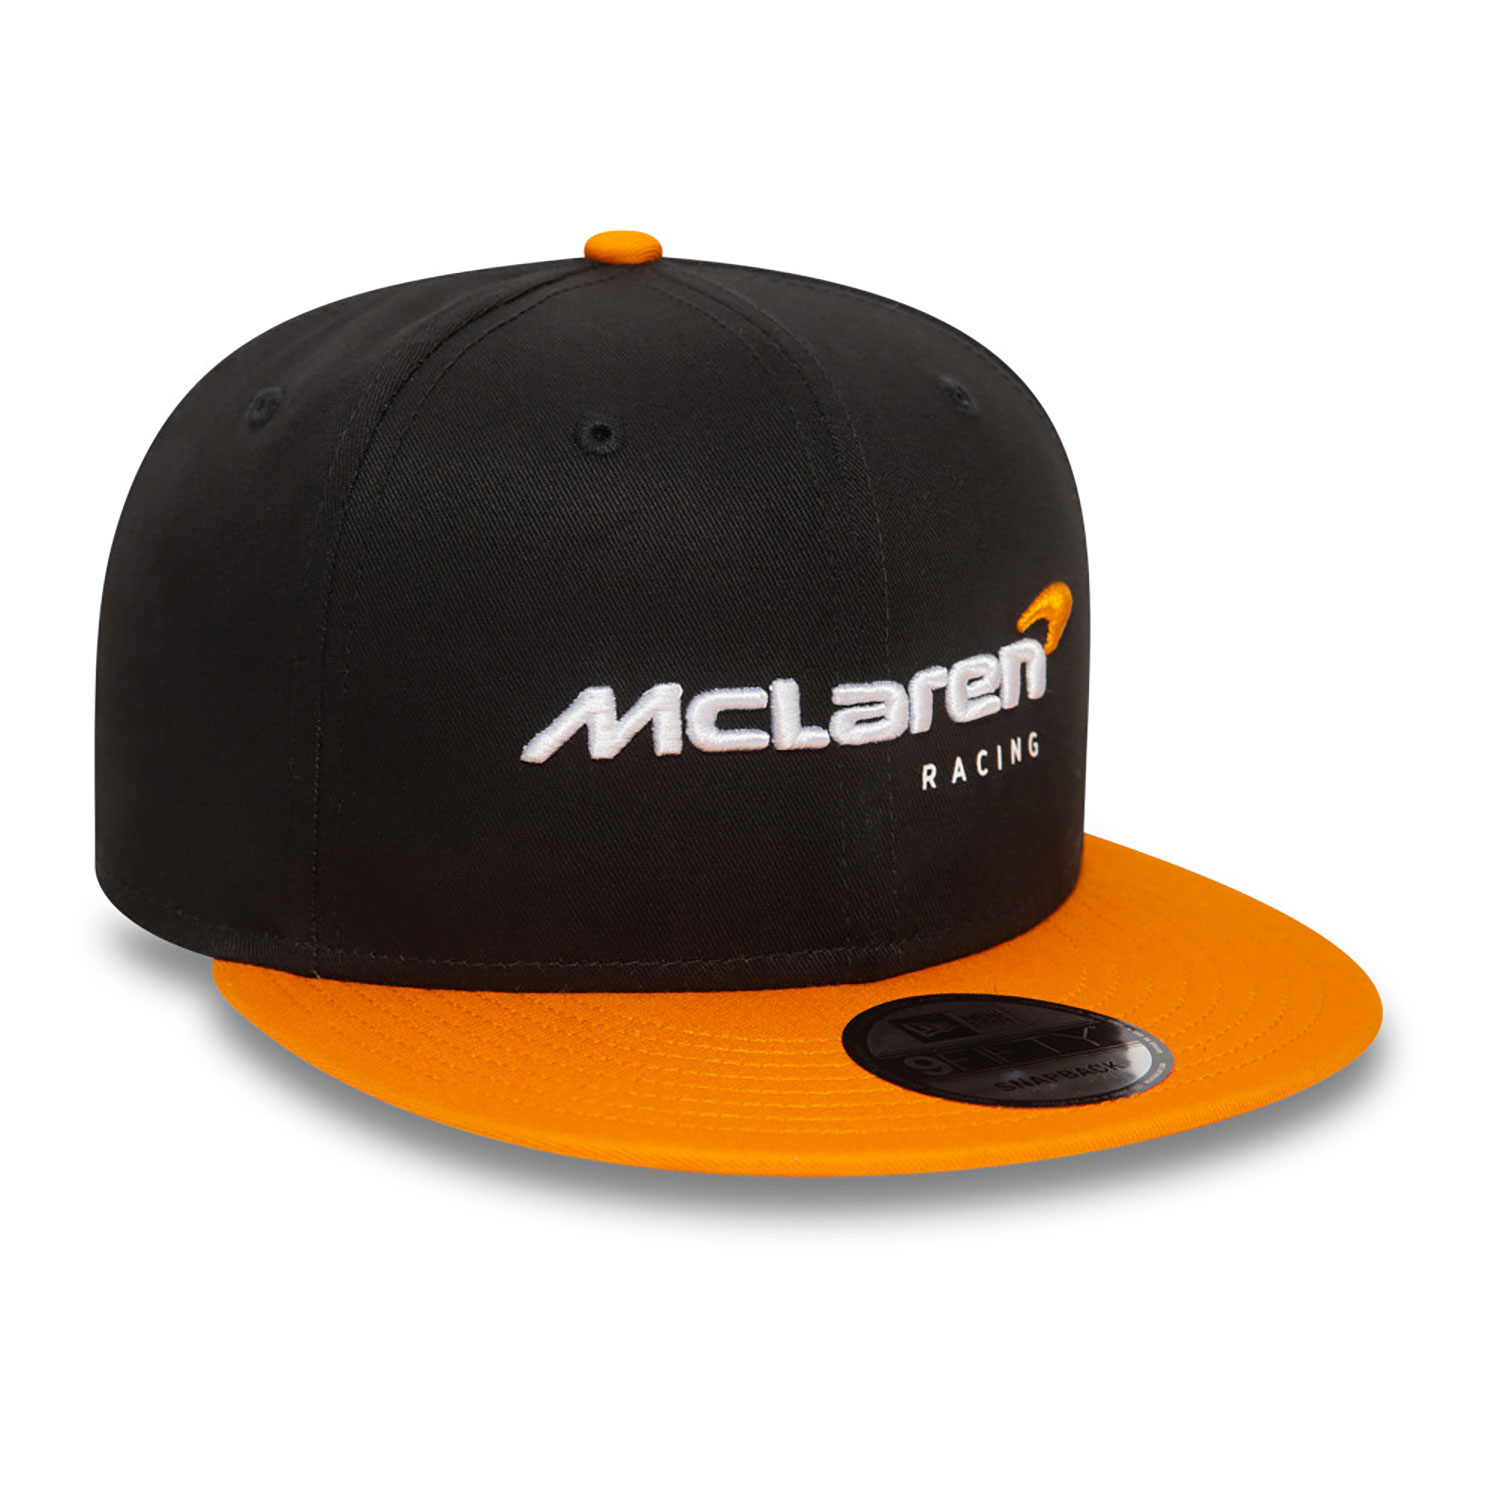 McLaren Racing Essentials Black 9FIFTY Snapback Cap